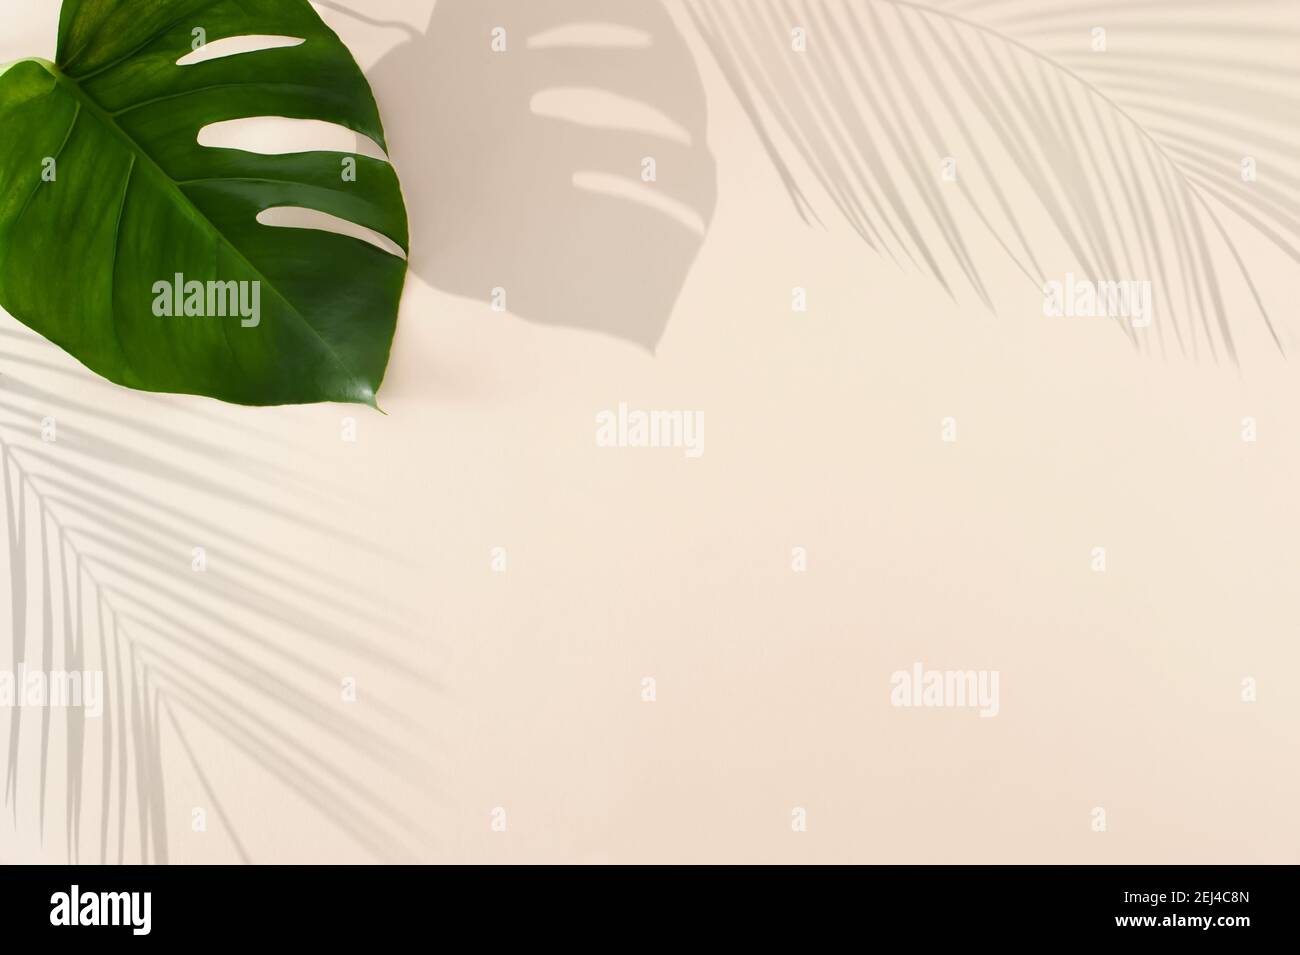 Ombres à feuilles tropicales vertes sur fond beige pastel. Concept d'été minimal avec feuilles de palmier et de monstère. Dessin créatif de la lumière A. Banque D'Images